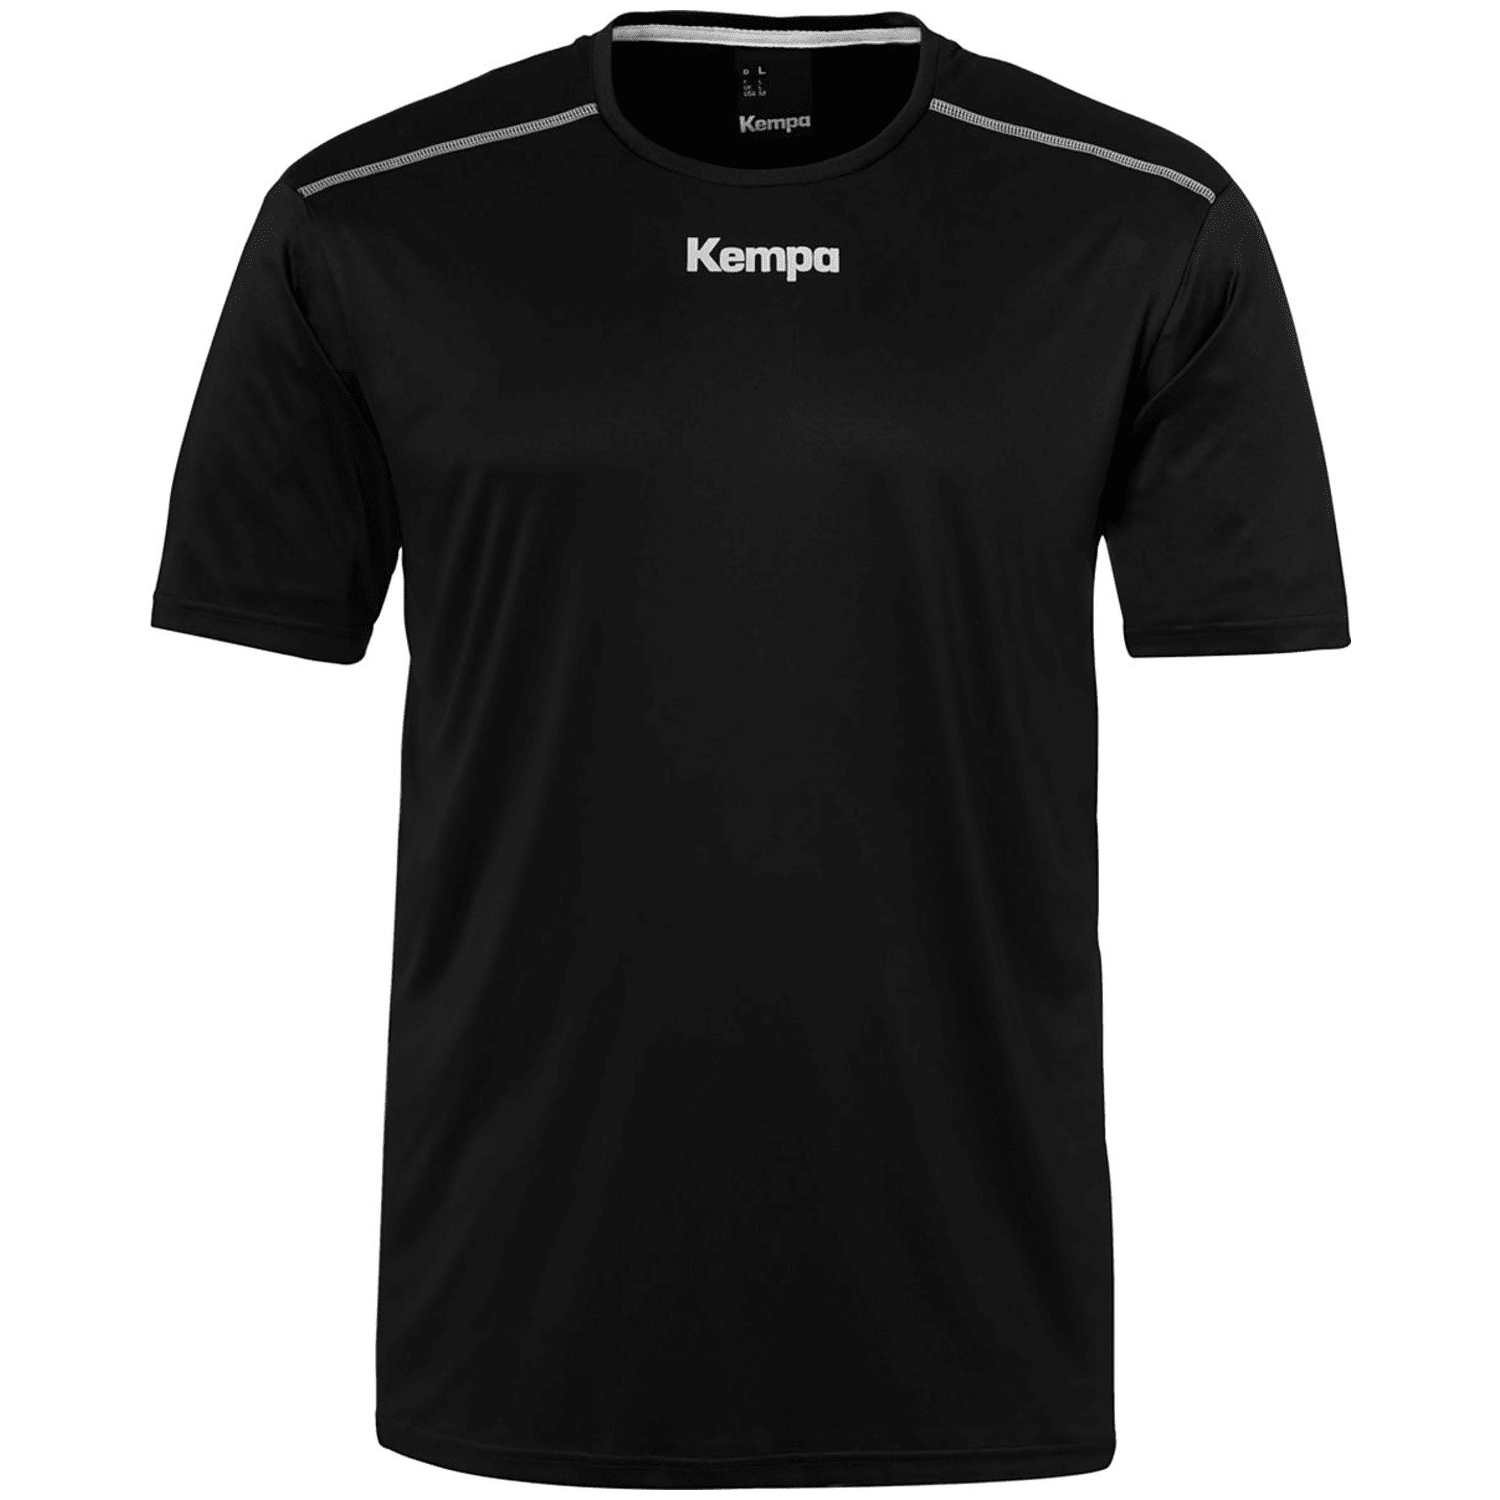 Kempa Poly Kinder T-Shirt